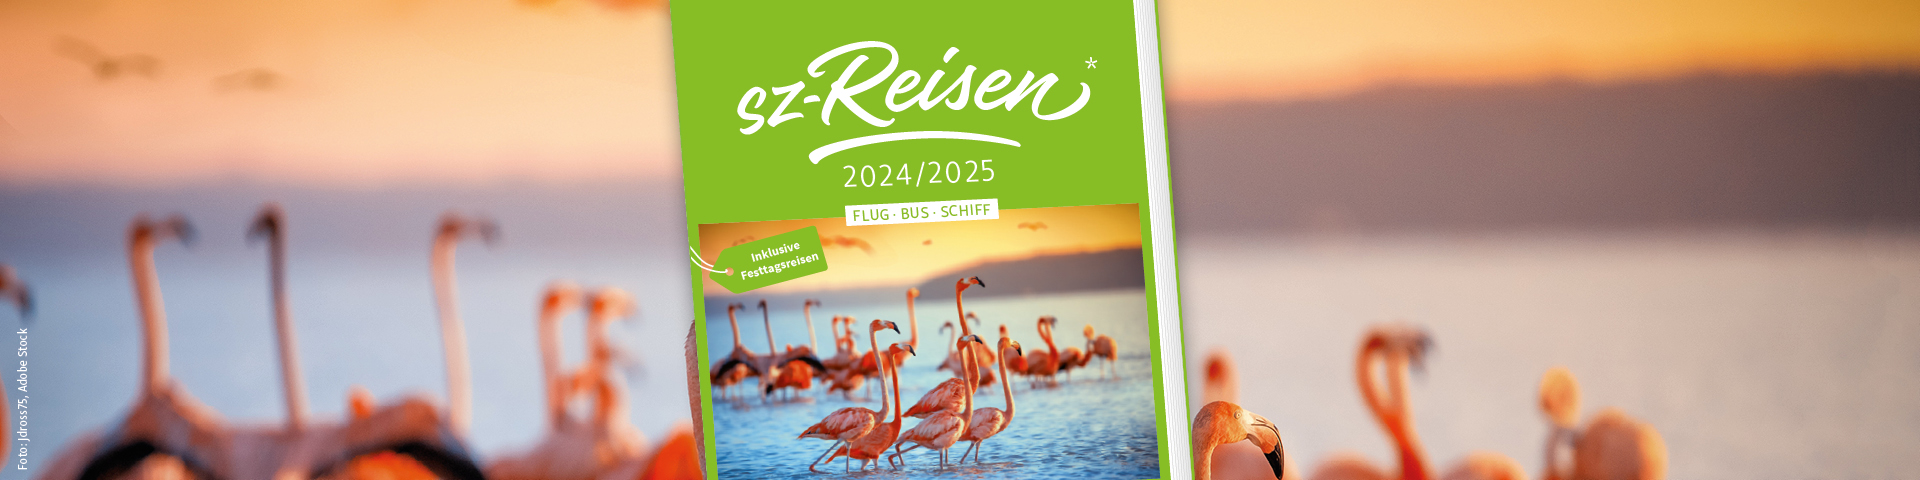 Der neue sz-Reisen Katalog 2024/25, inkl. Festtagsreisen, Jetzt bestellen